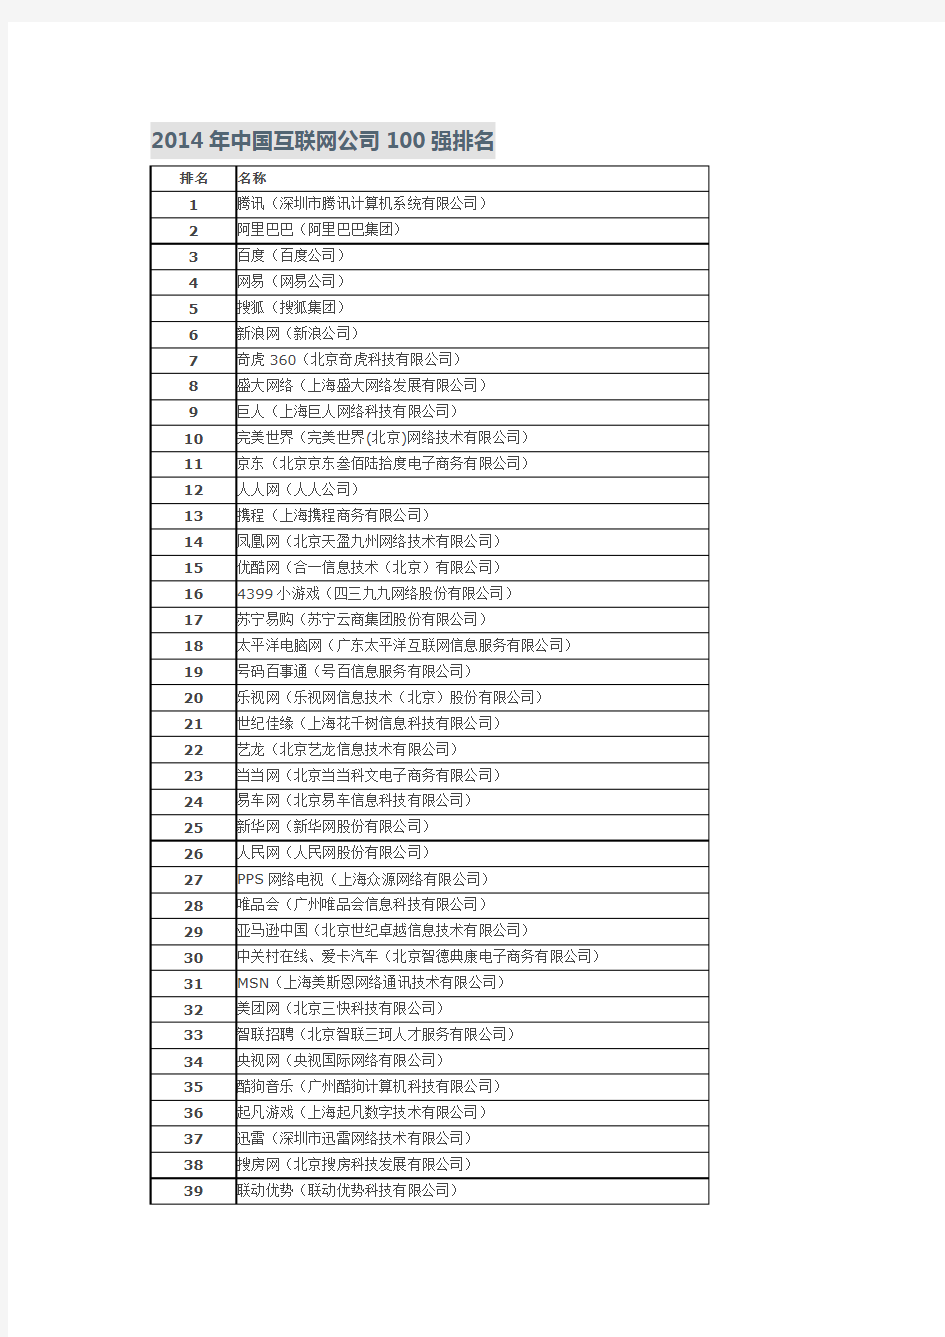 2014年中国互联网公司100强排名